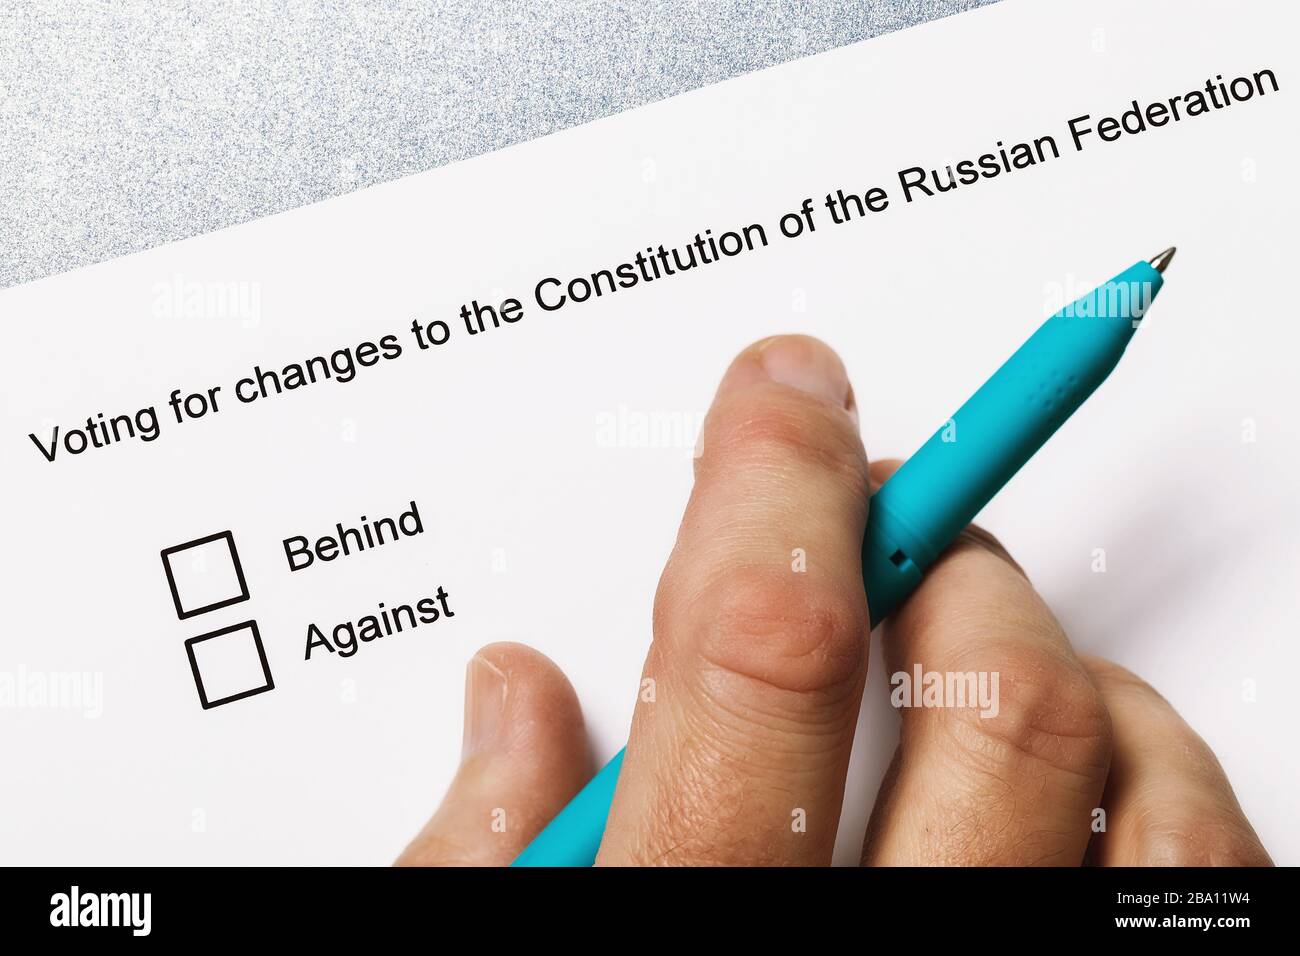 Main de l'homme et forme de texte. Le concept du vote pour les changements constitutionnels dans la Fédération de Russie Banque D'Images